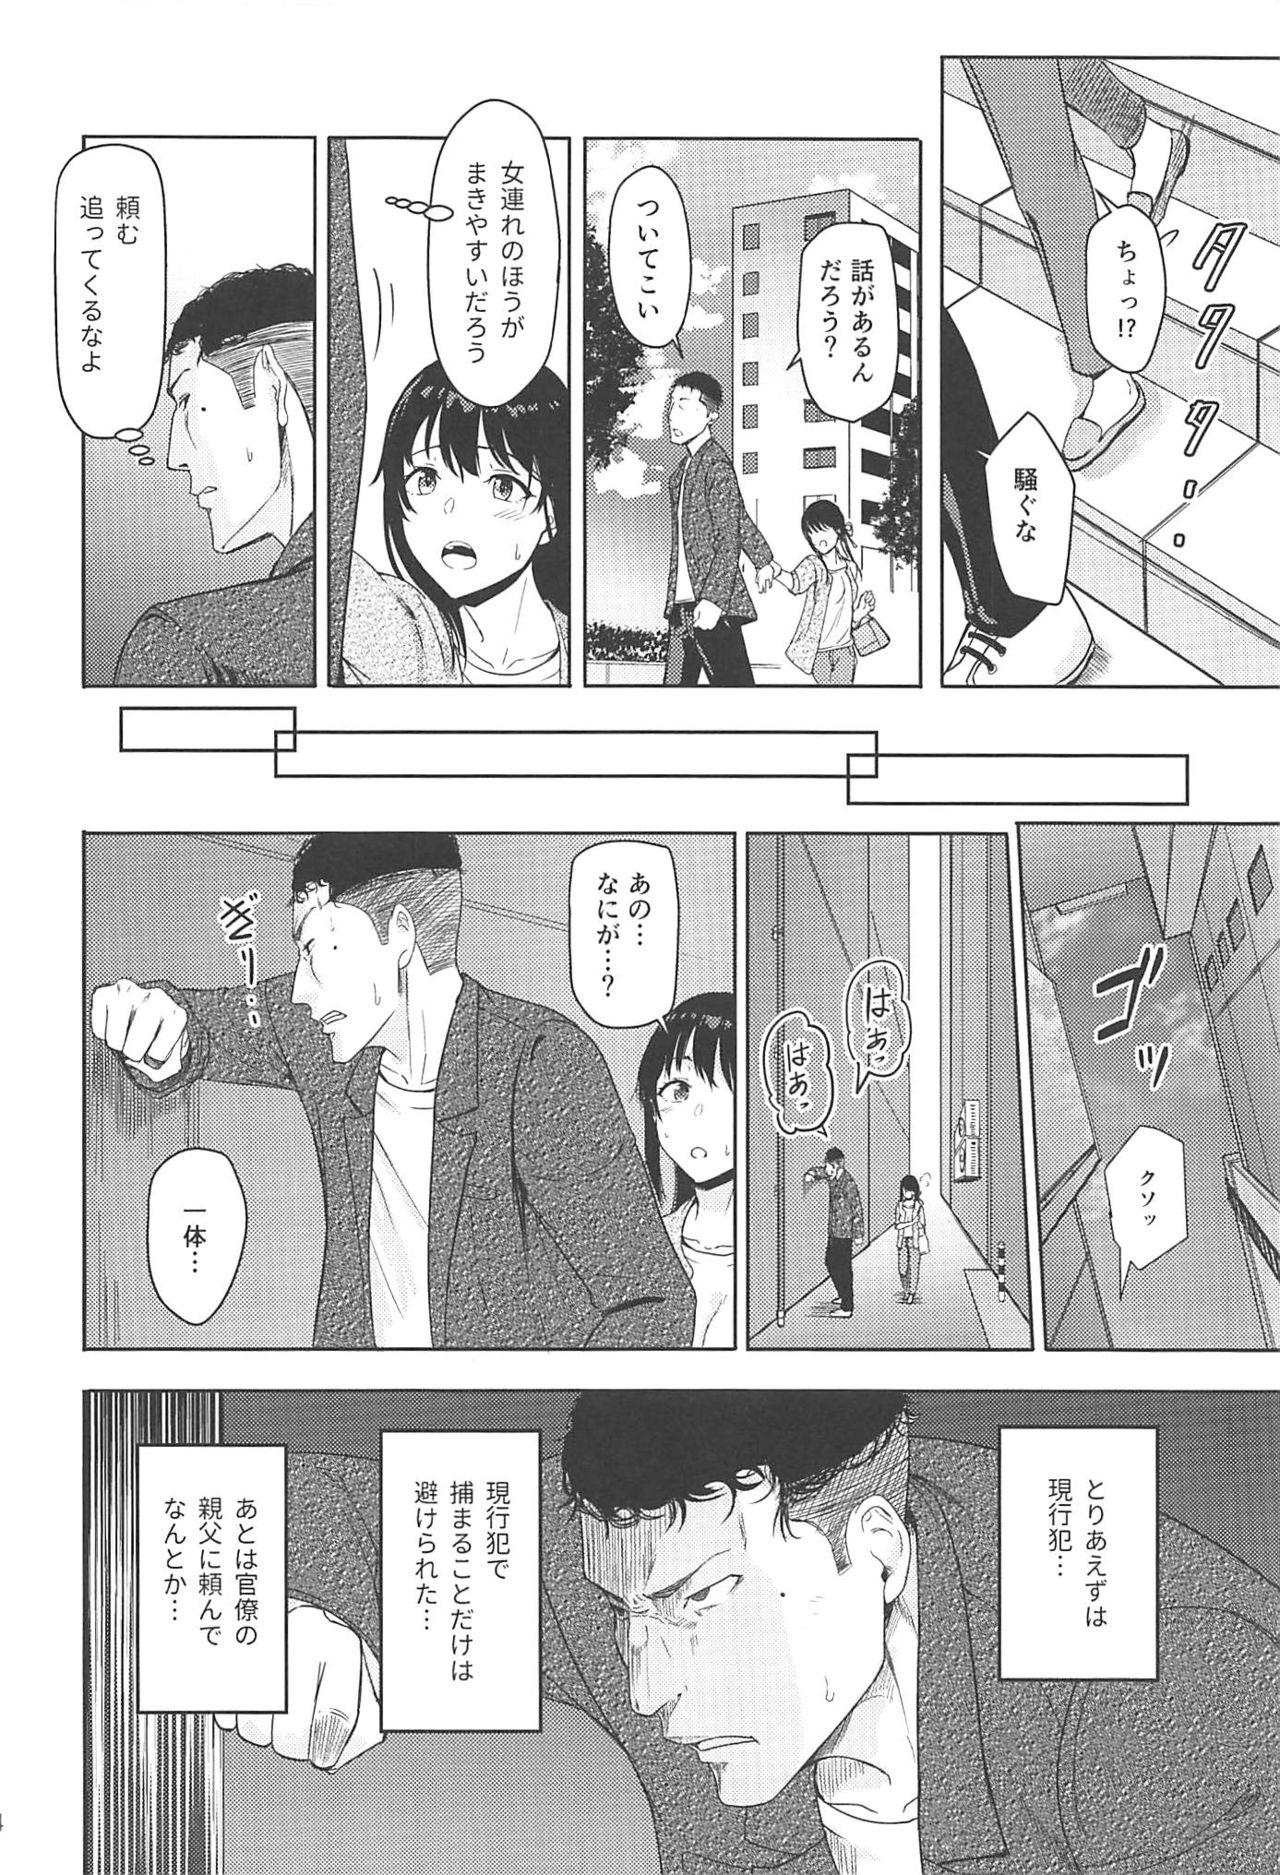 Novinhas Mitsuha - Kimi no na wa. Made - Page 13